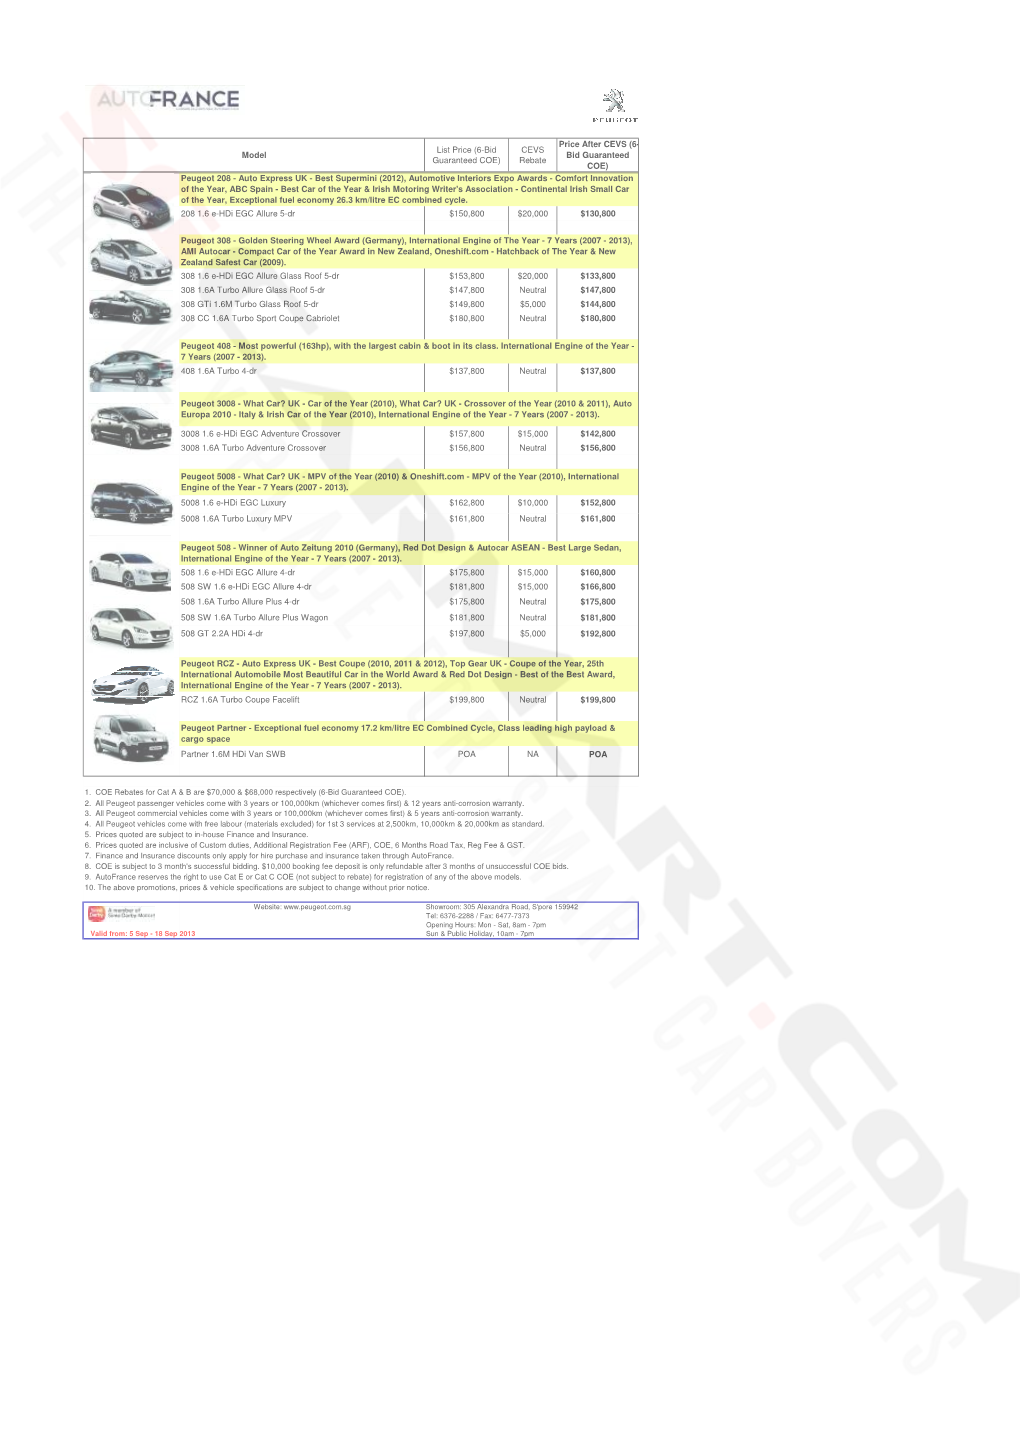 Peugeot Pricelist Sep 2013 (2013-09-06)